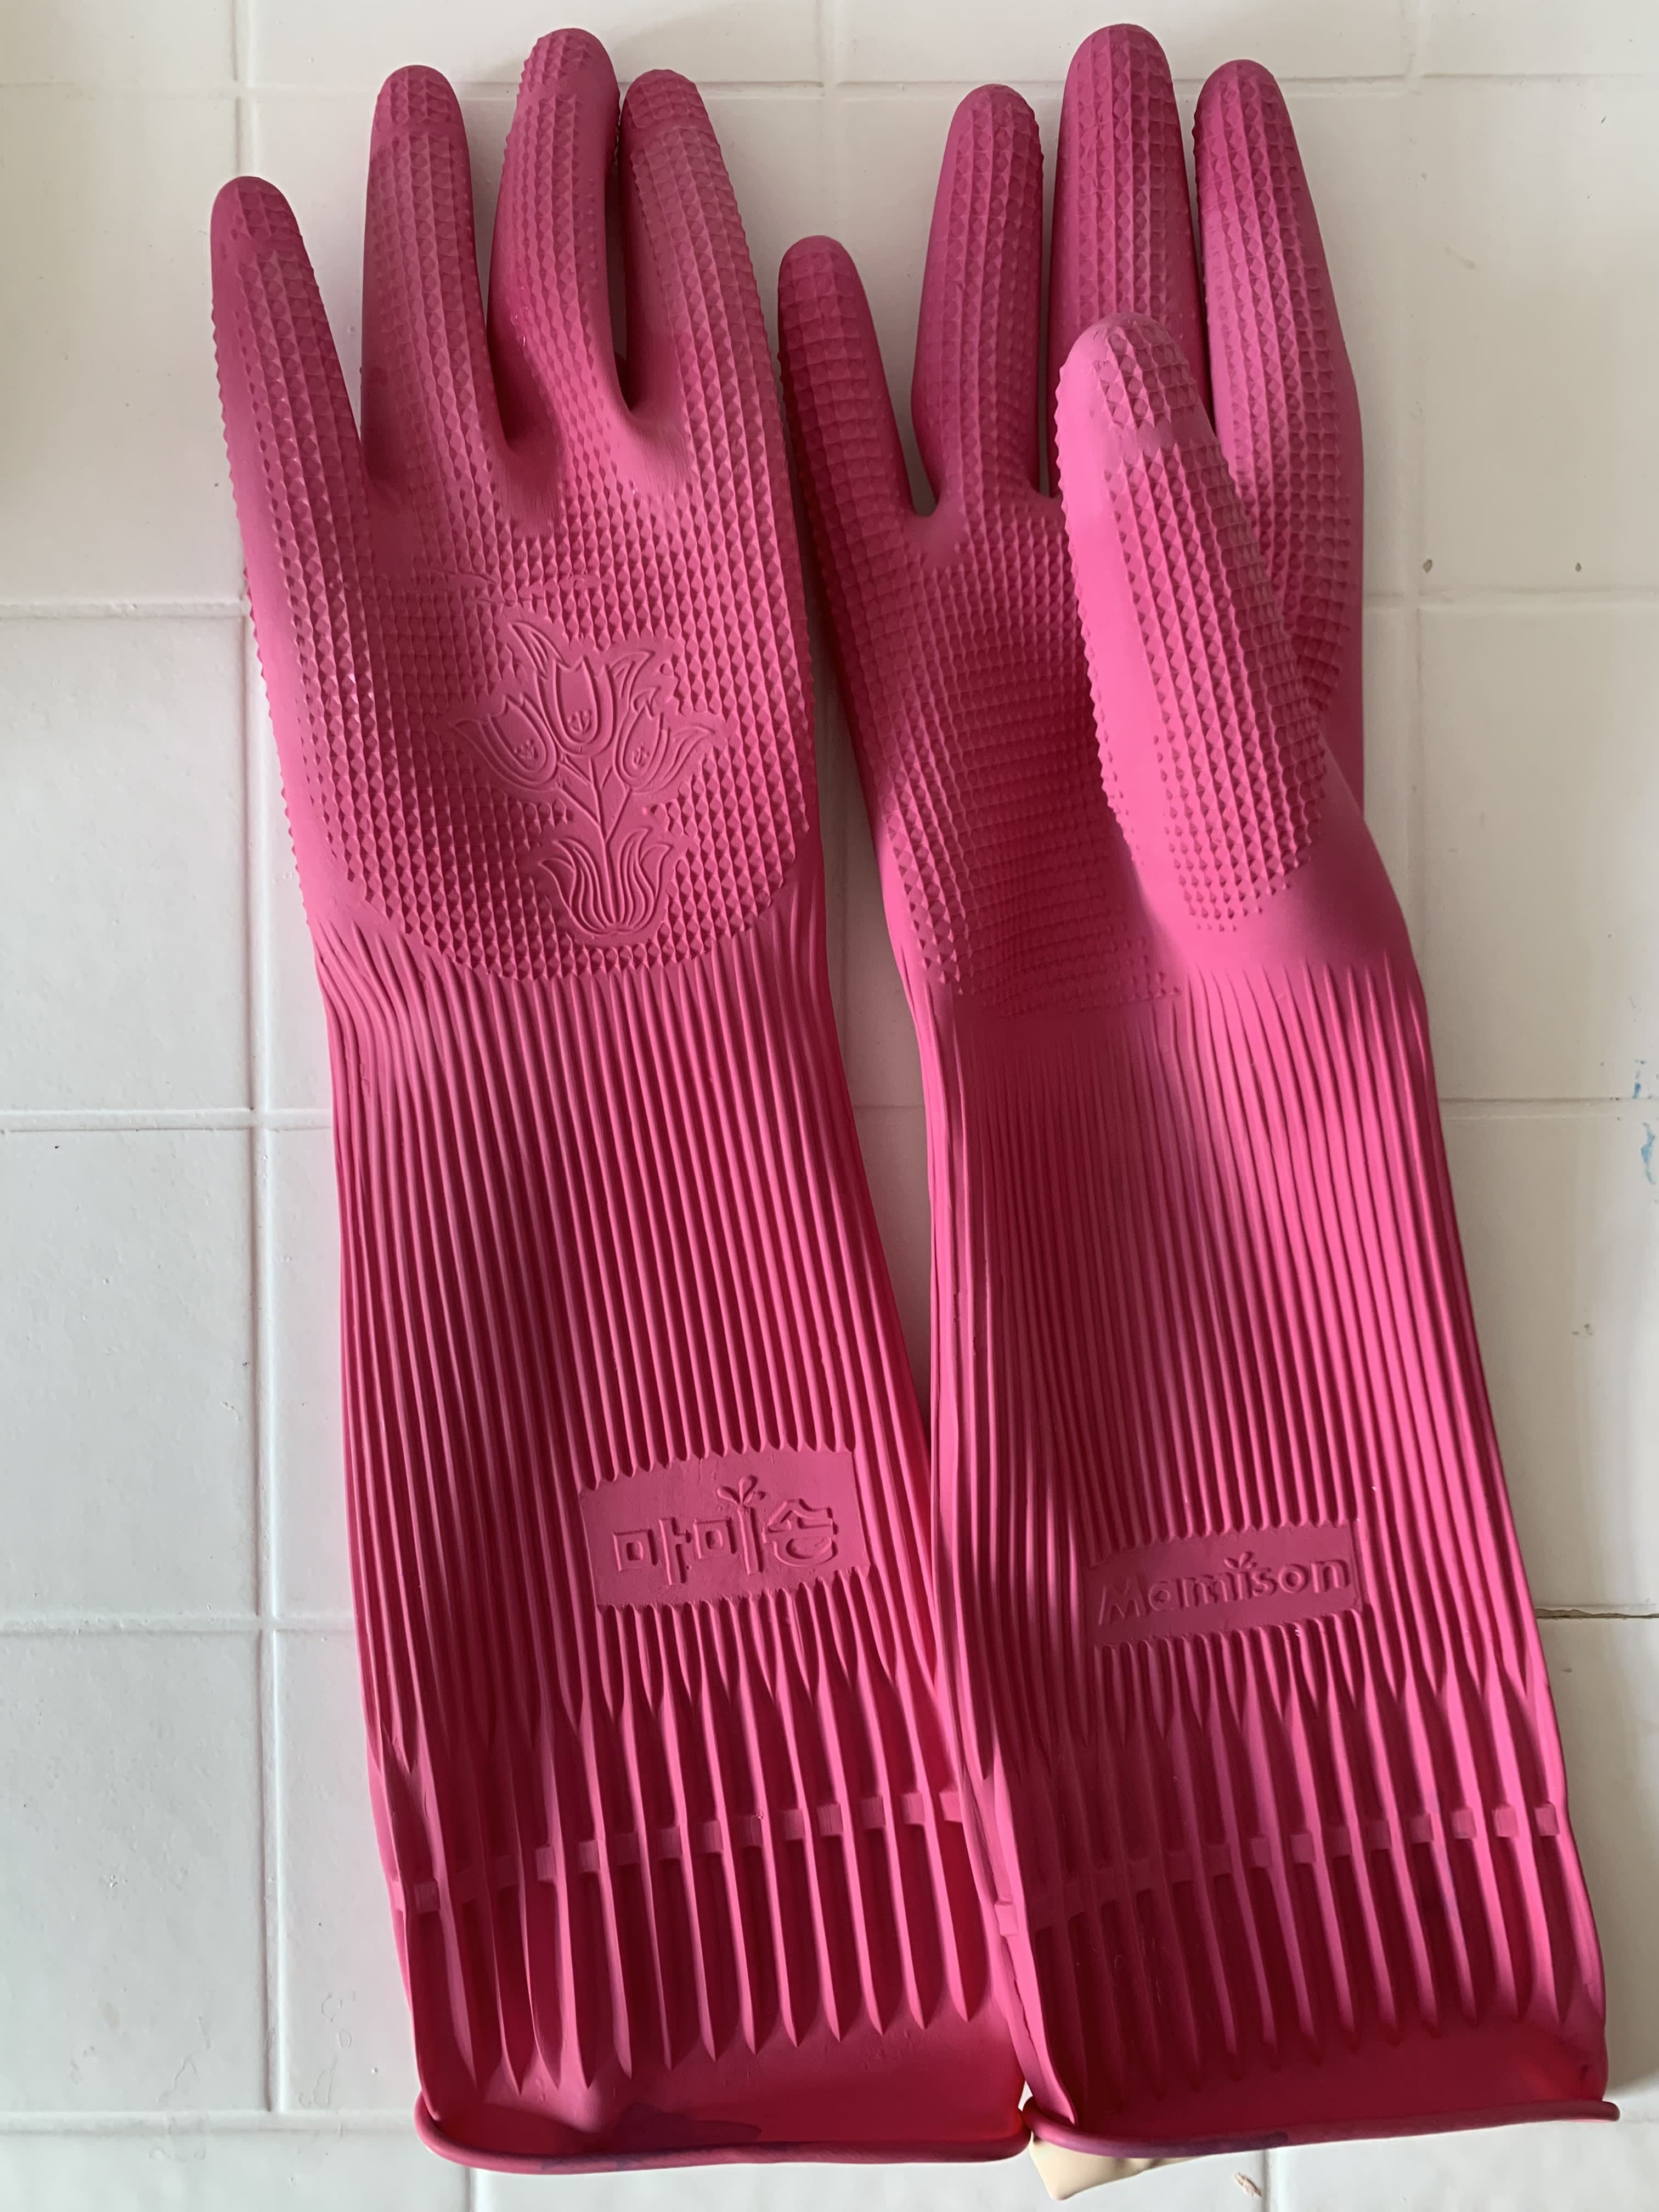 https://cdn.apartmenttherapy.info/image/upload/v1665755799/k/Edit/2022-10-Dishwashing-Gloves-Product-Review/pink_dishwashing_gloves.jpg